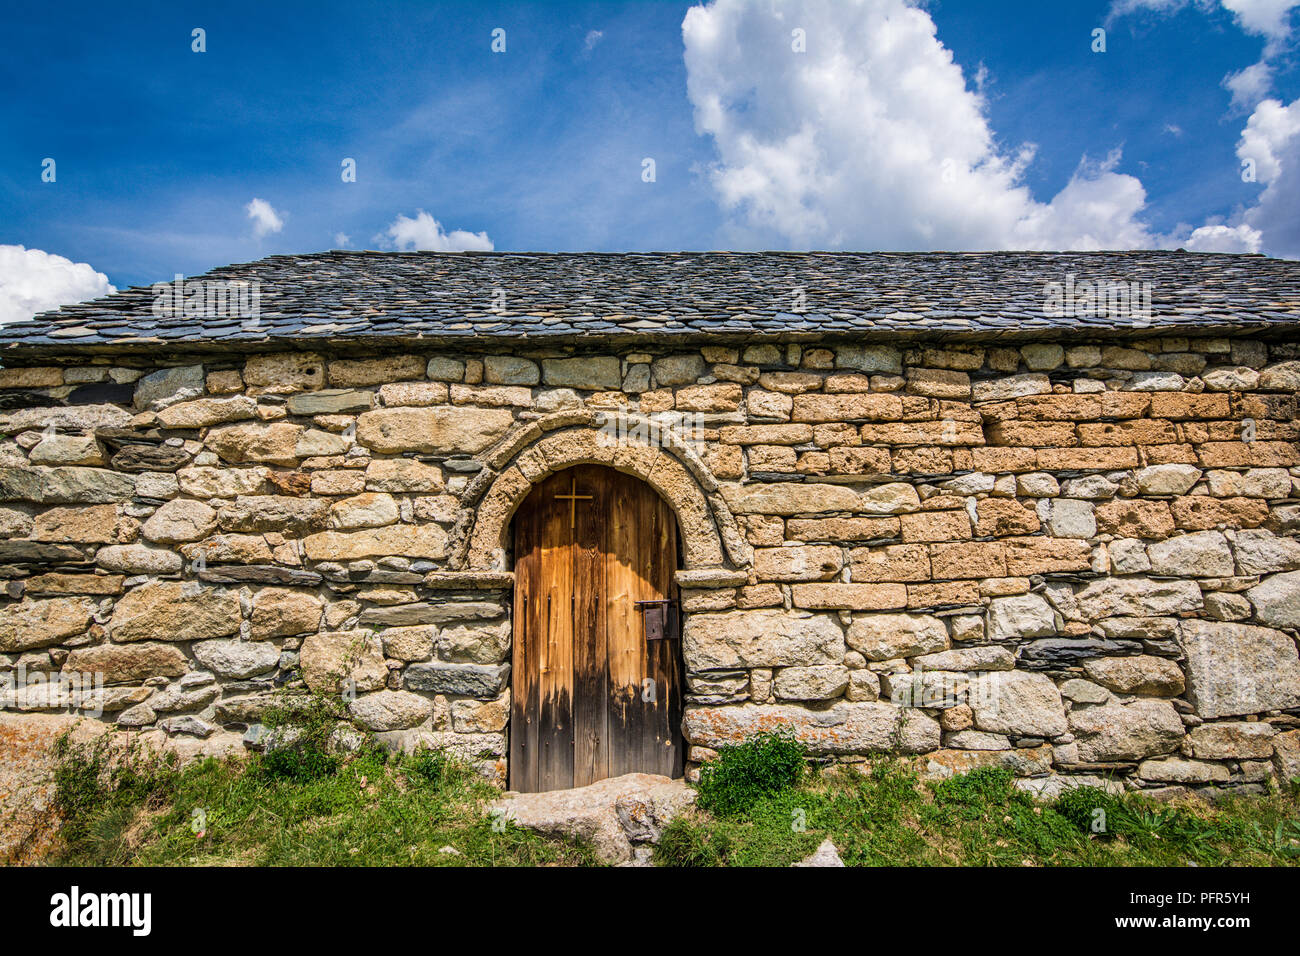 Vieille porte en bois romane de la Sant Quirc de Taüll , La Catalogne, Espagne. Églises romanes catalanes de la Vall de Boi mondial de l'UNESCO sont H Banque D'Images